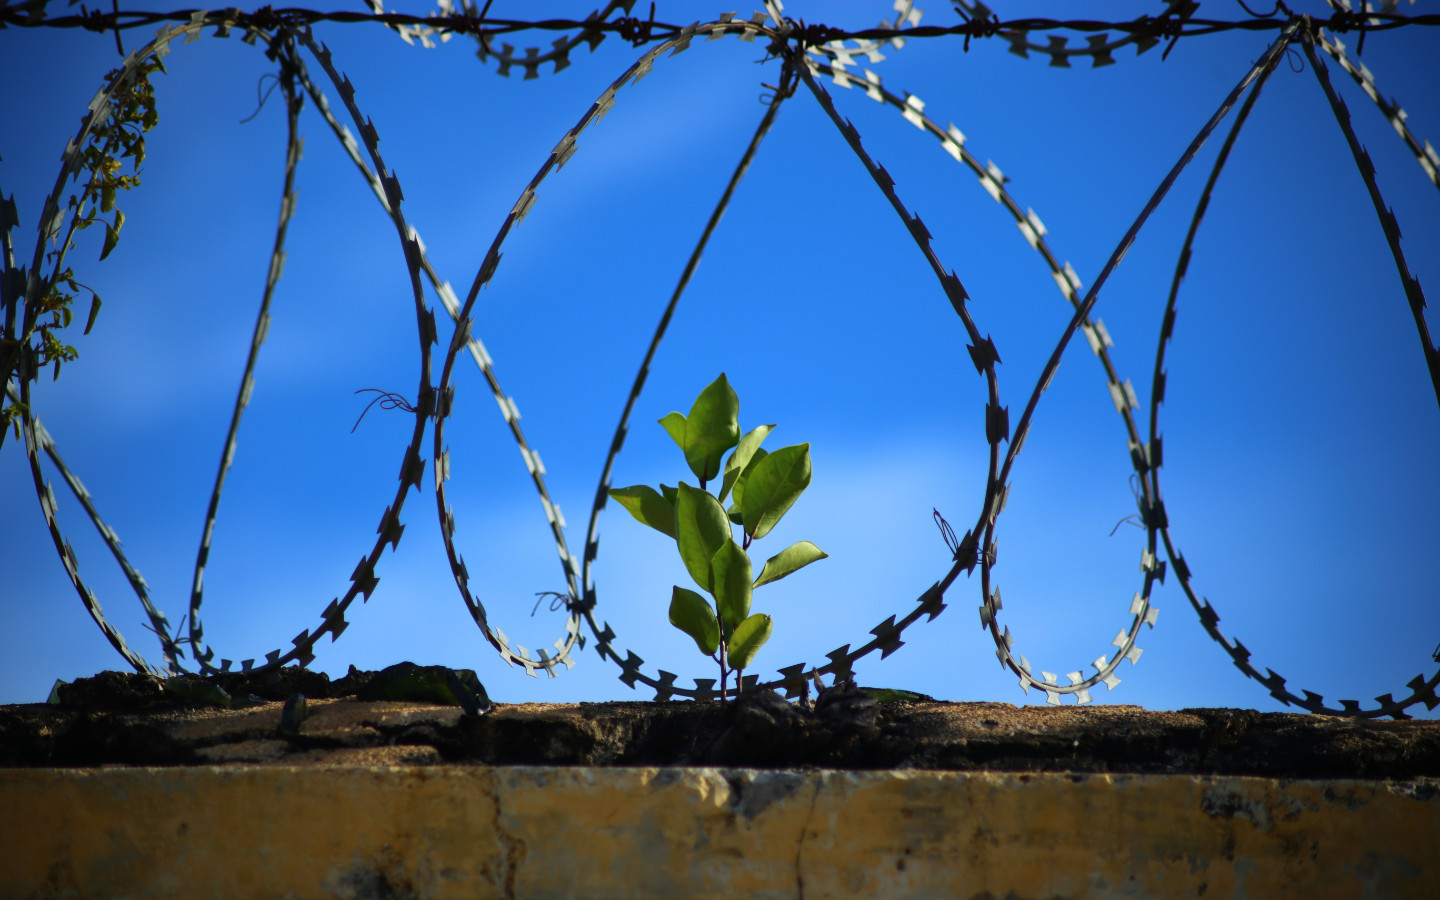 Vanglakaplanid on toetanud kinnipeetavaid teel ühiskonda nüüdseks sada aastat